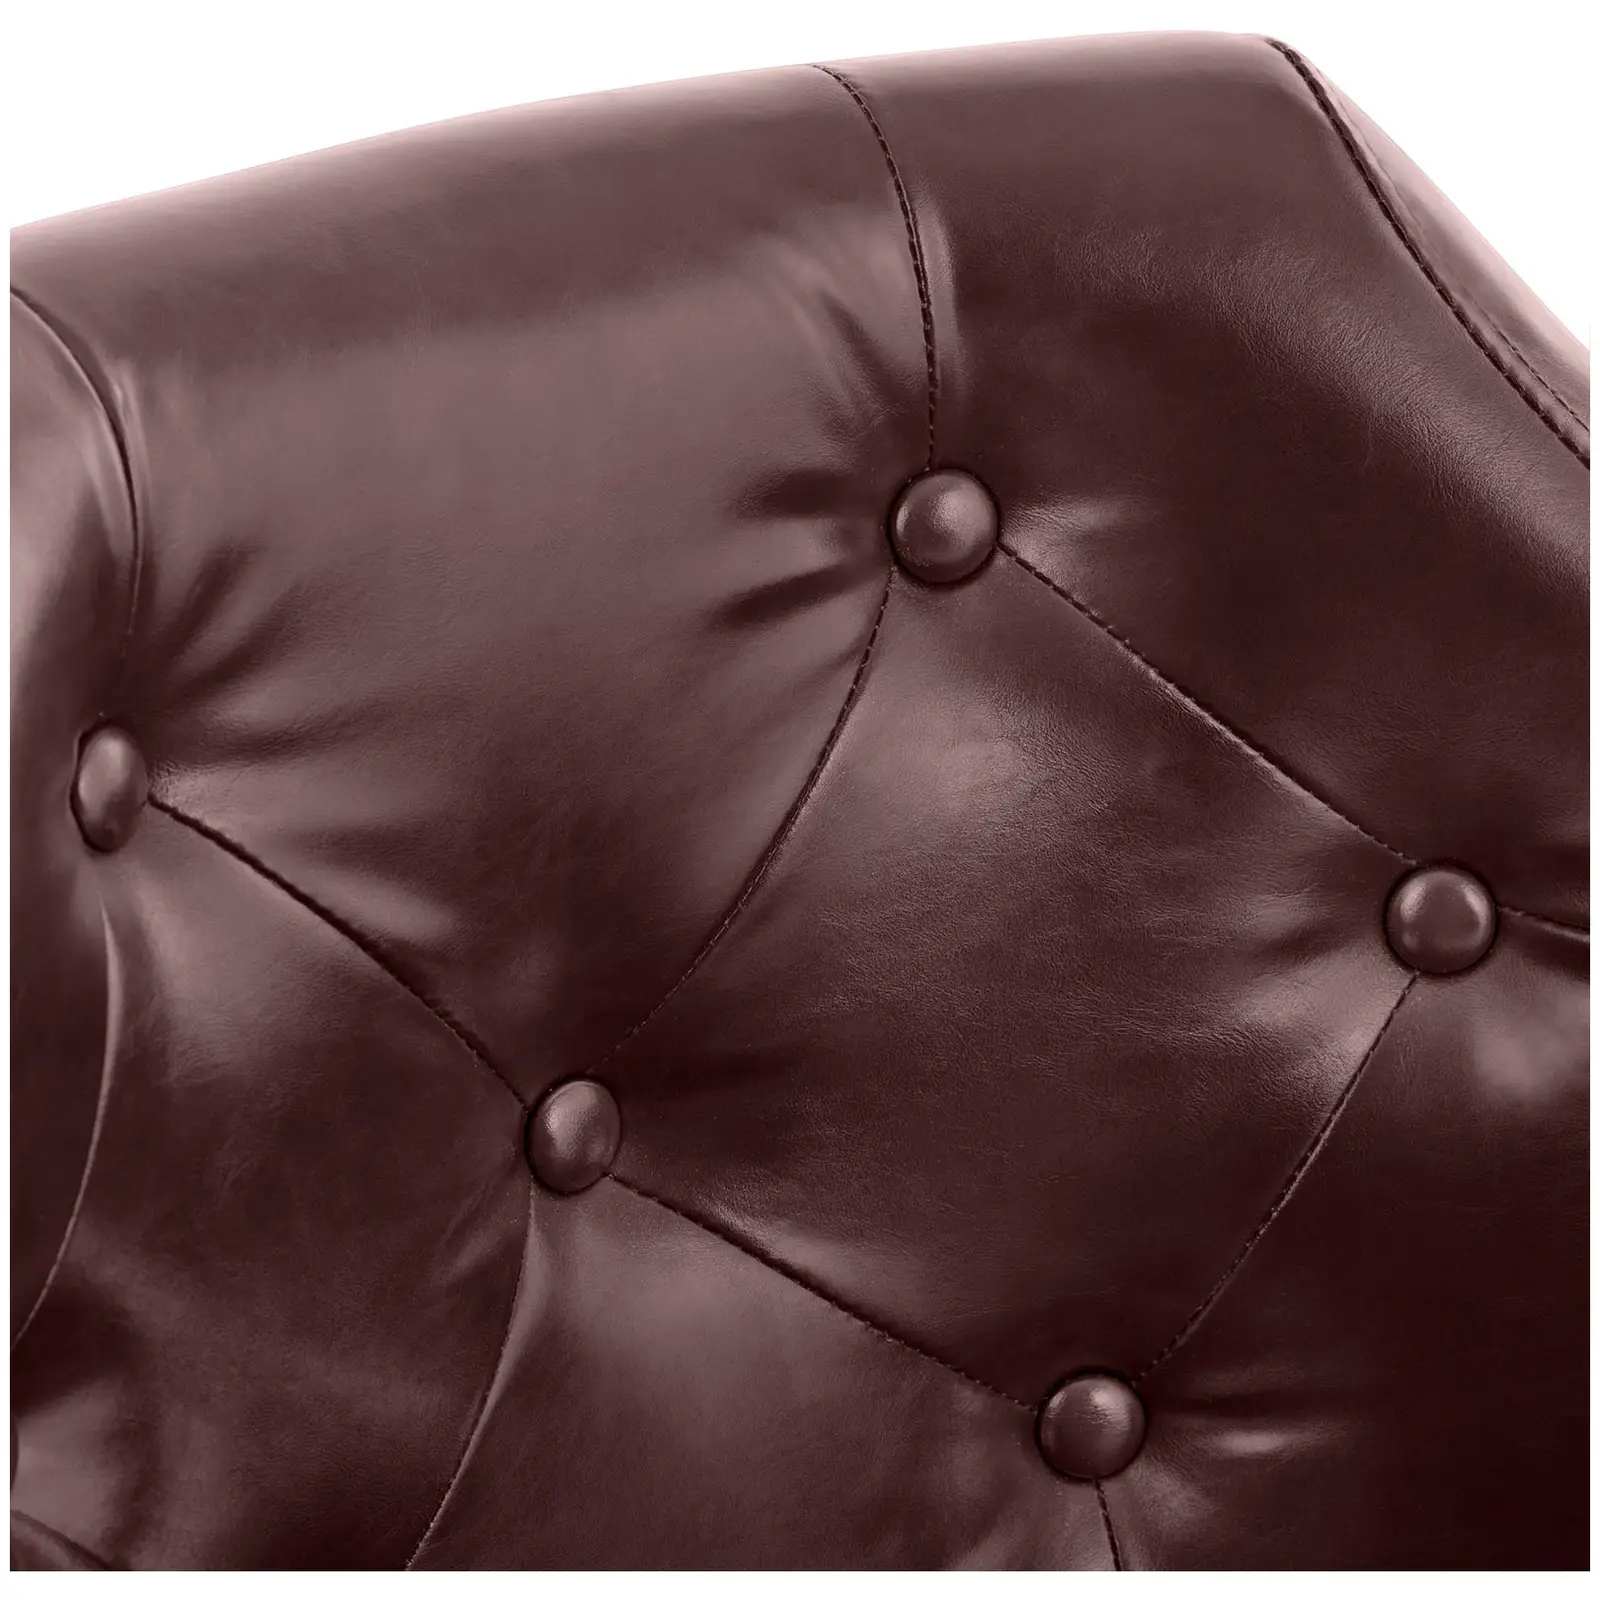 Fotel fryzjerski z podnóżkiem - 470-570 mm - 150 kg - brązowy